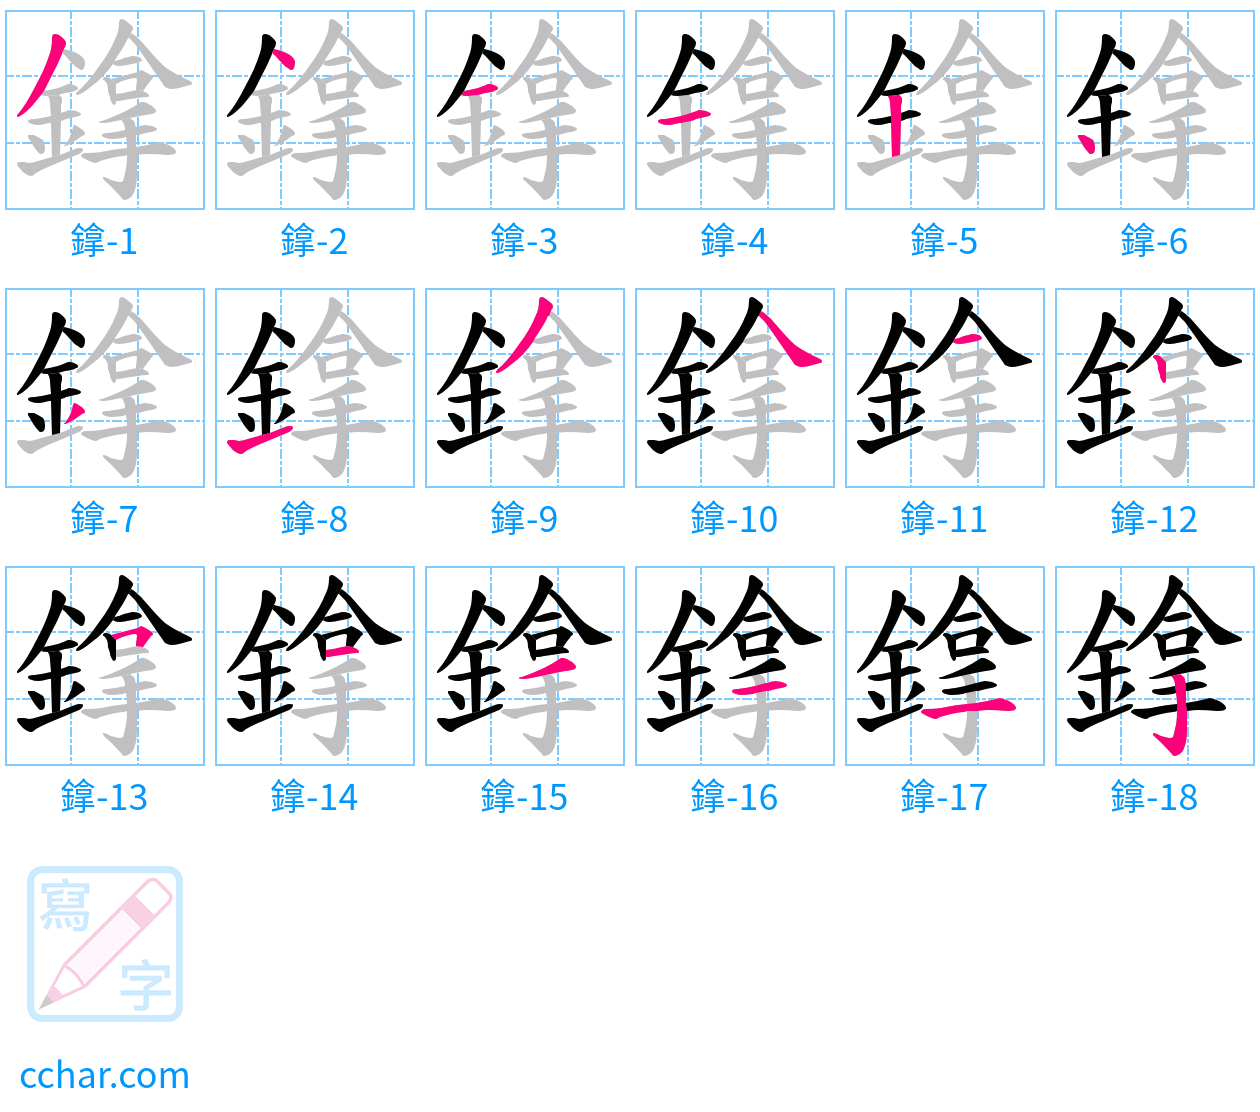 鎿 stroke order step-by-step diagram